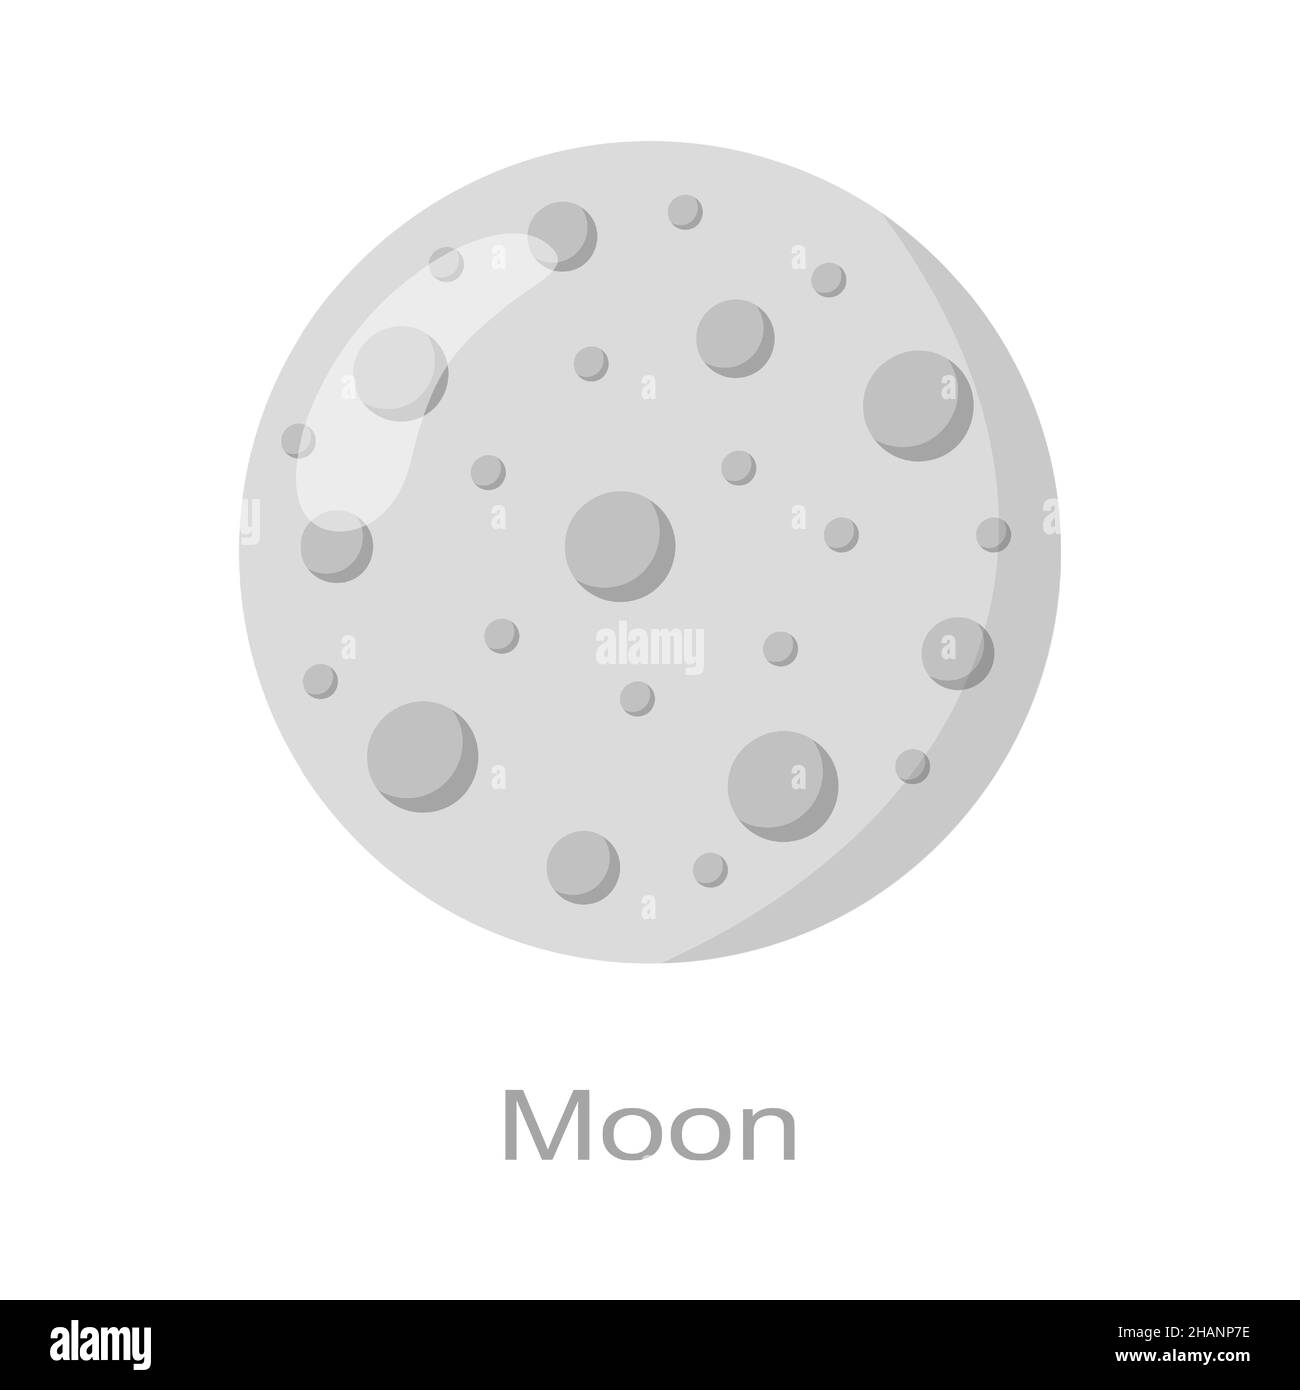 Icona Luna con nome isolato su sfondo bianco. Massa satellite. Elemento universo del sistema solare. Bambini planetaria. Illustrazione di un cartoon vettoriale. Illustrazione Vettoriale